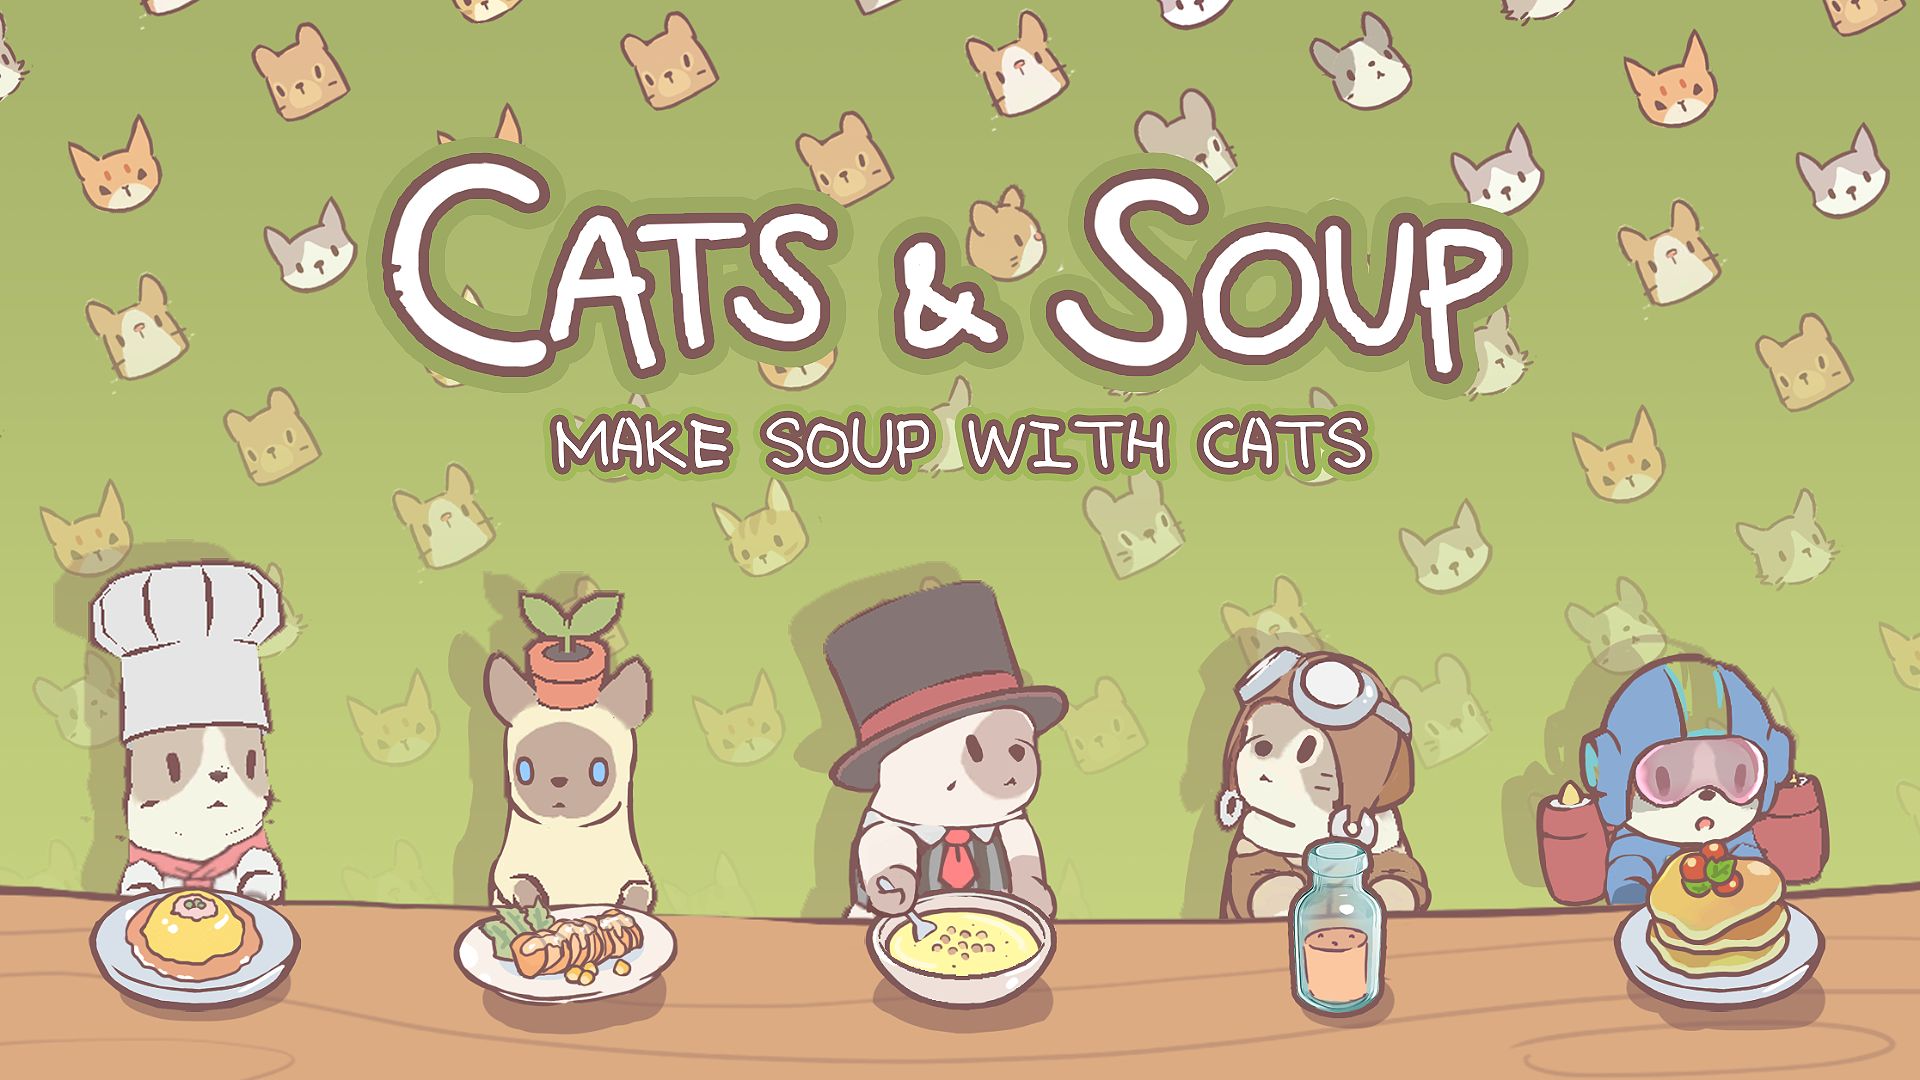 CATS & SOUP